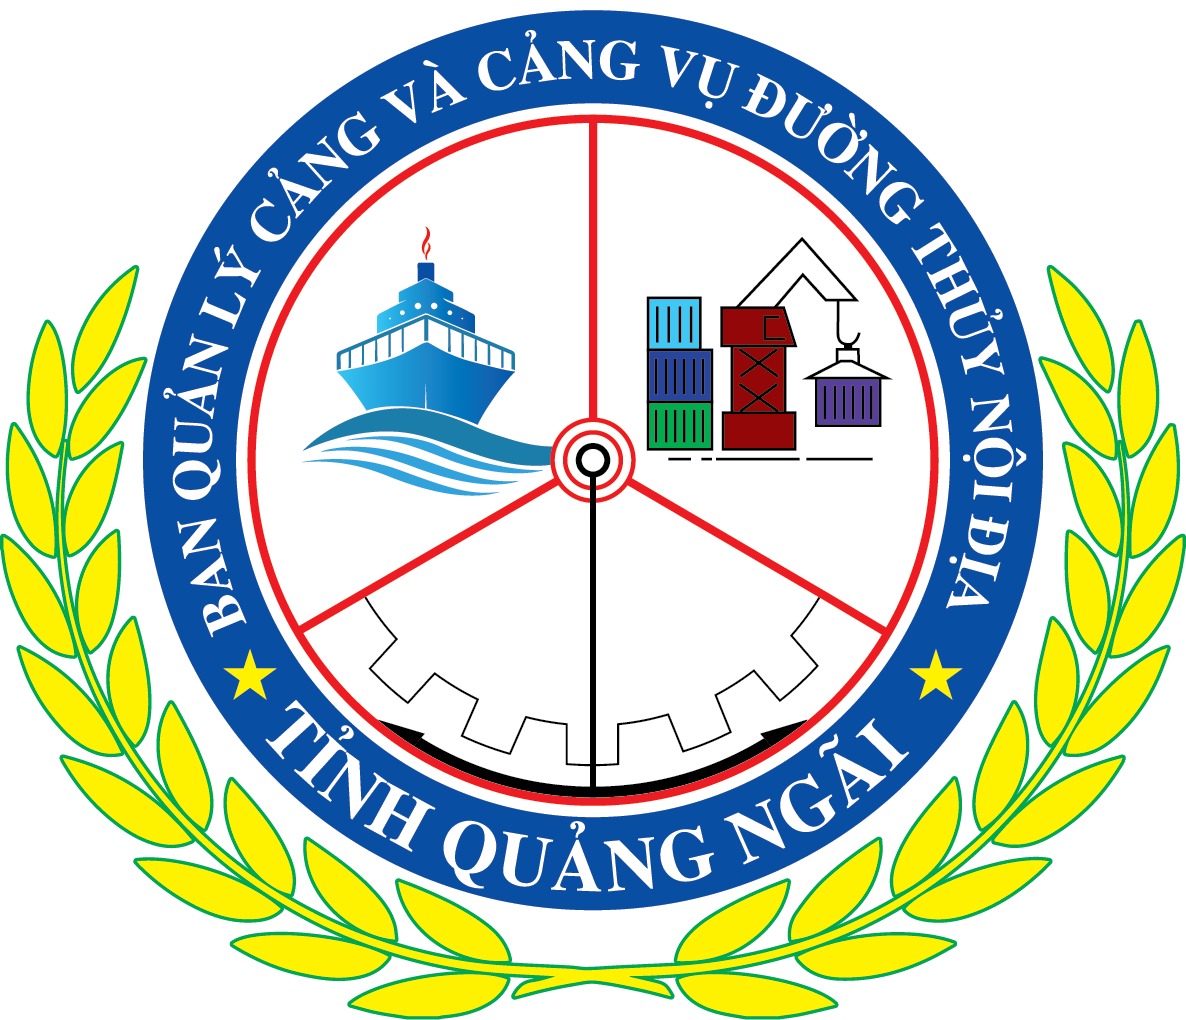 Cảng Sa Kỳ - Bến Đình (Lý Sơn)| BQL cảng và Cảng vụ đường thủy nội địa